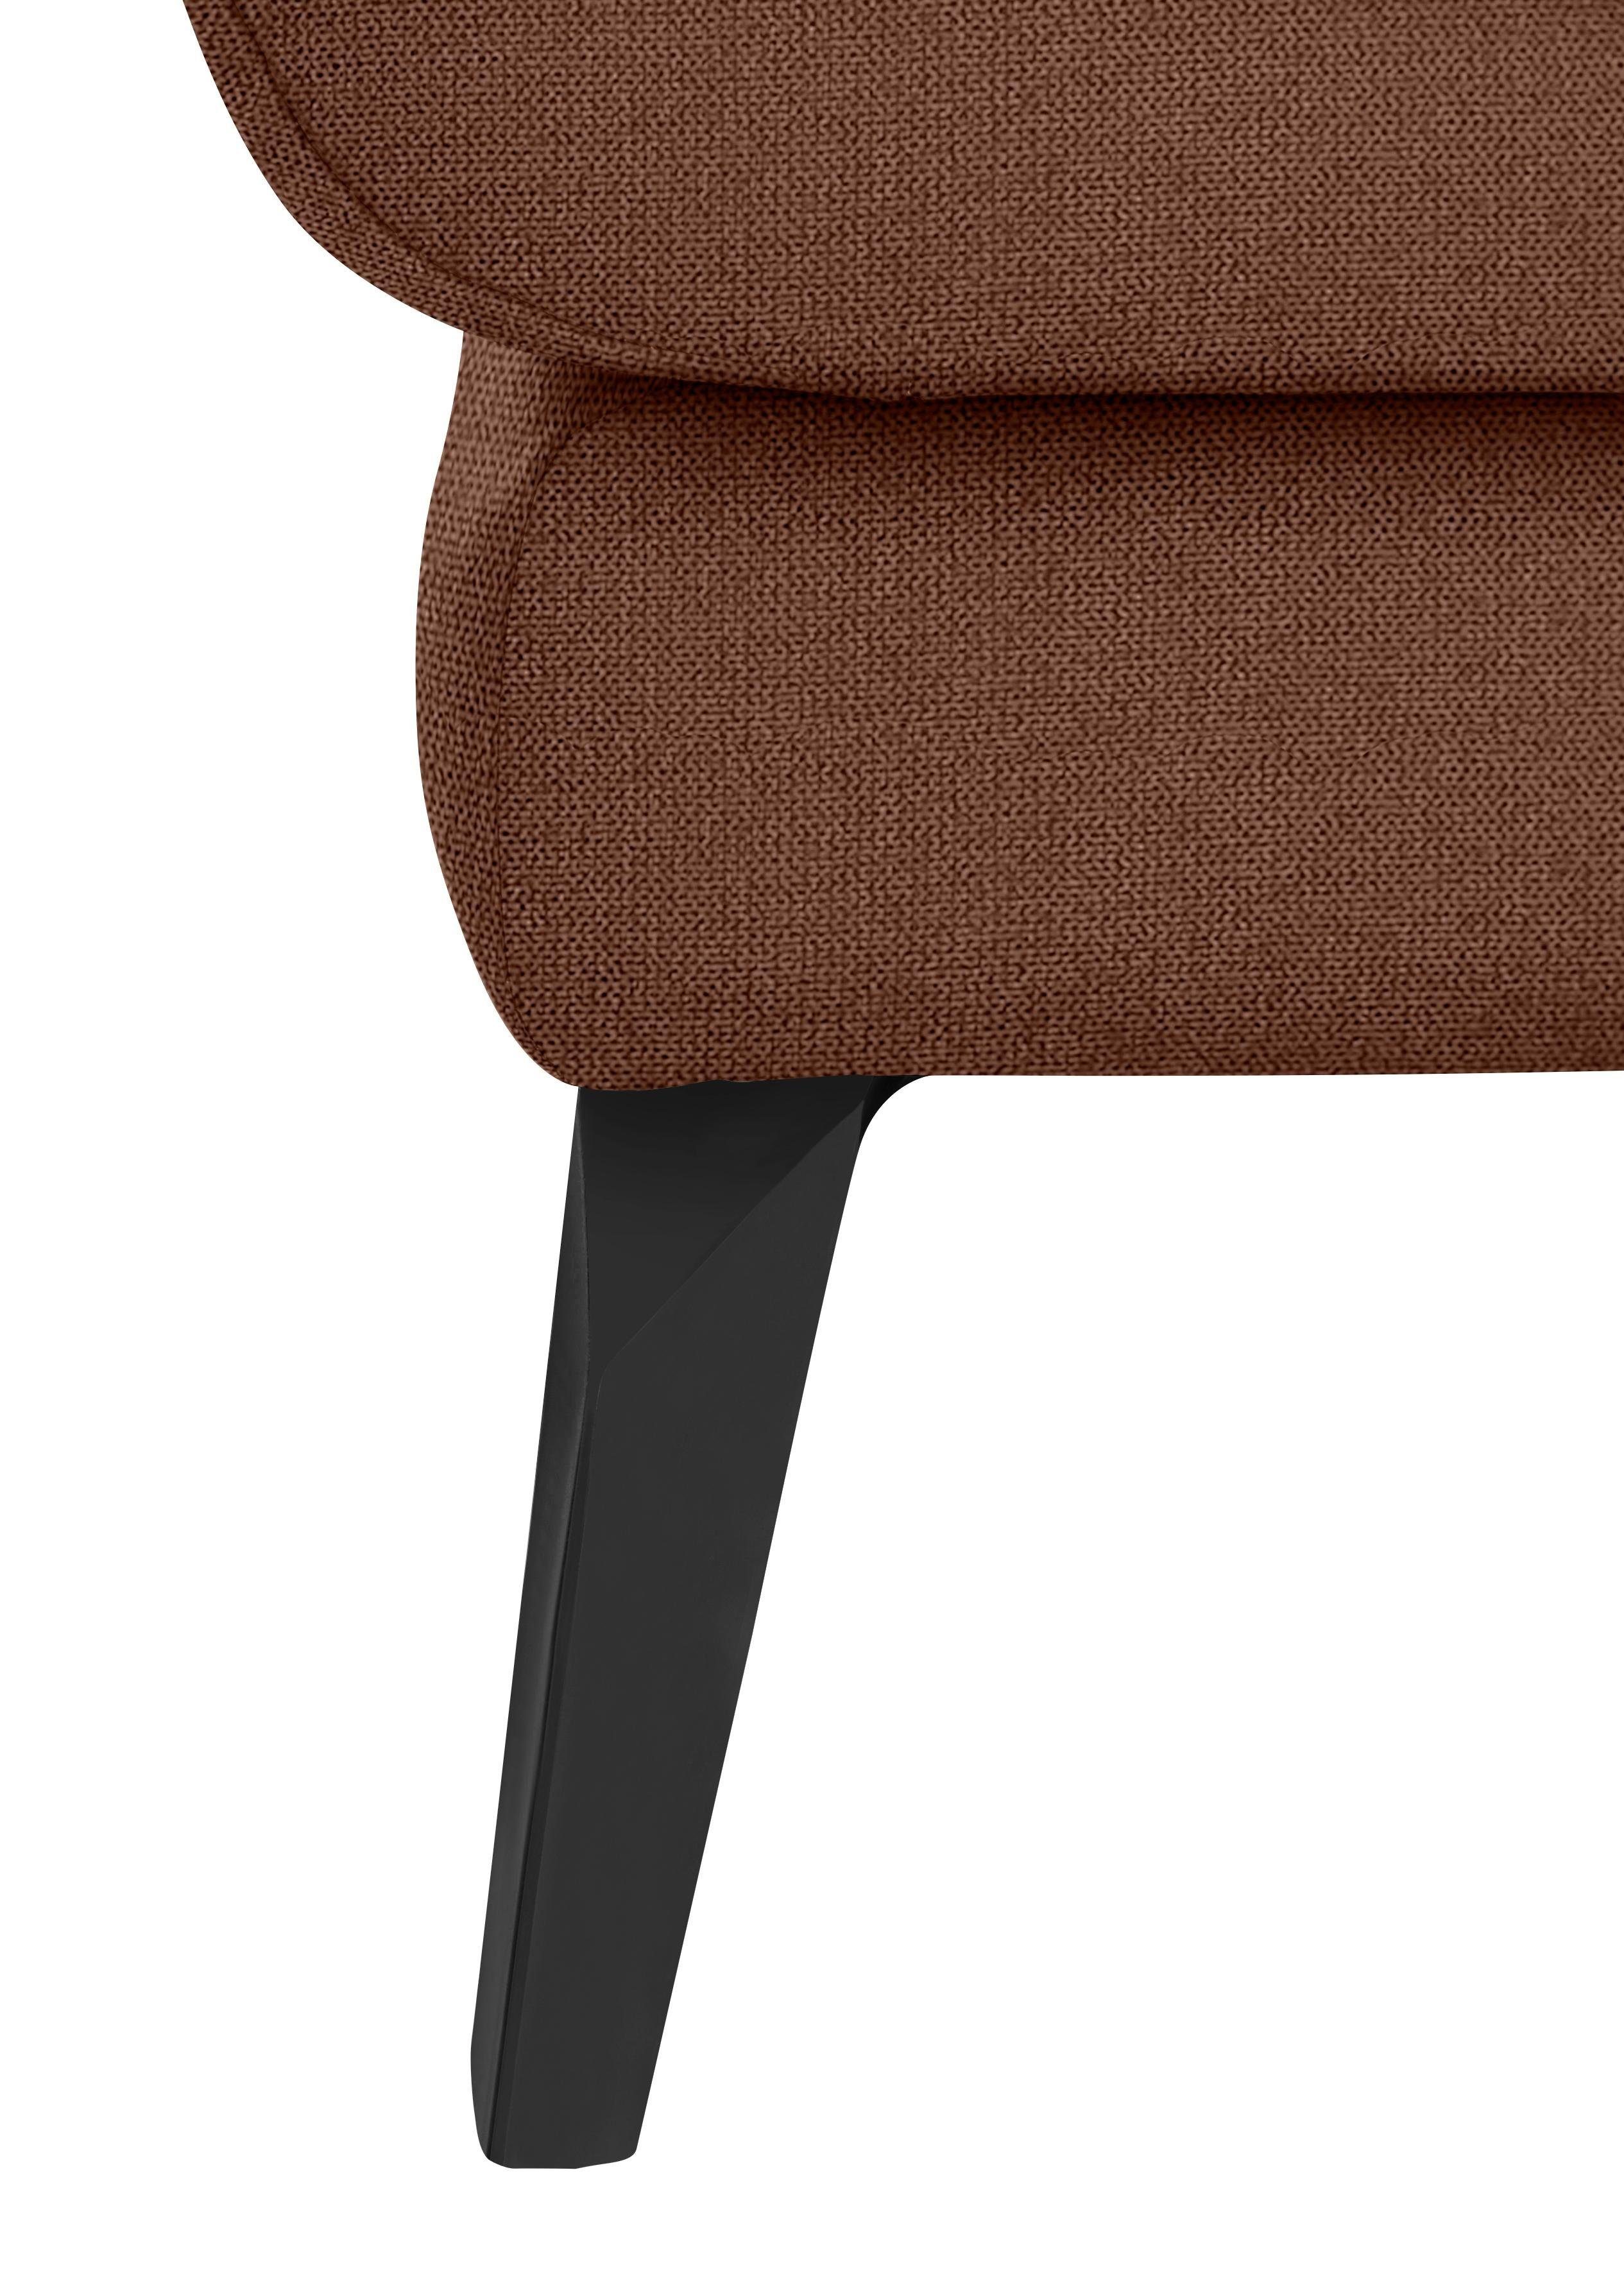 softy, Füße Sitz, schwarz pulverbeschichtet mit dekorativer Heftung Chaiselongue W.SCHILLIG im